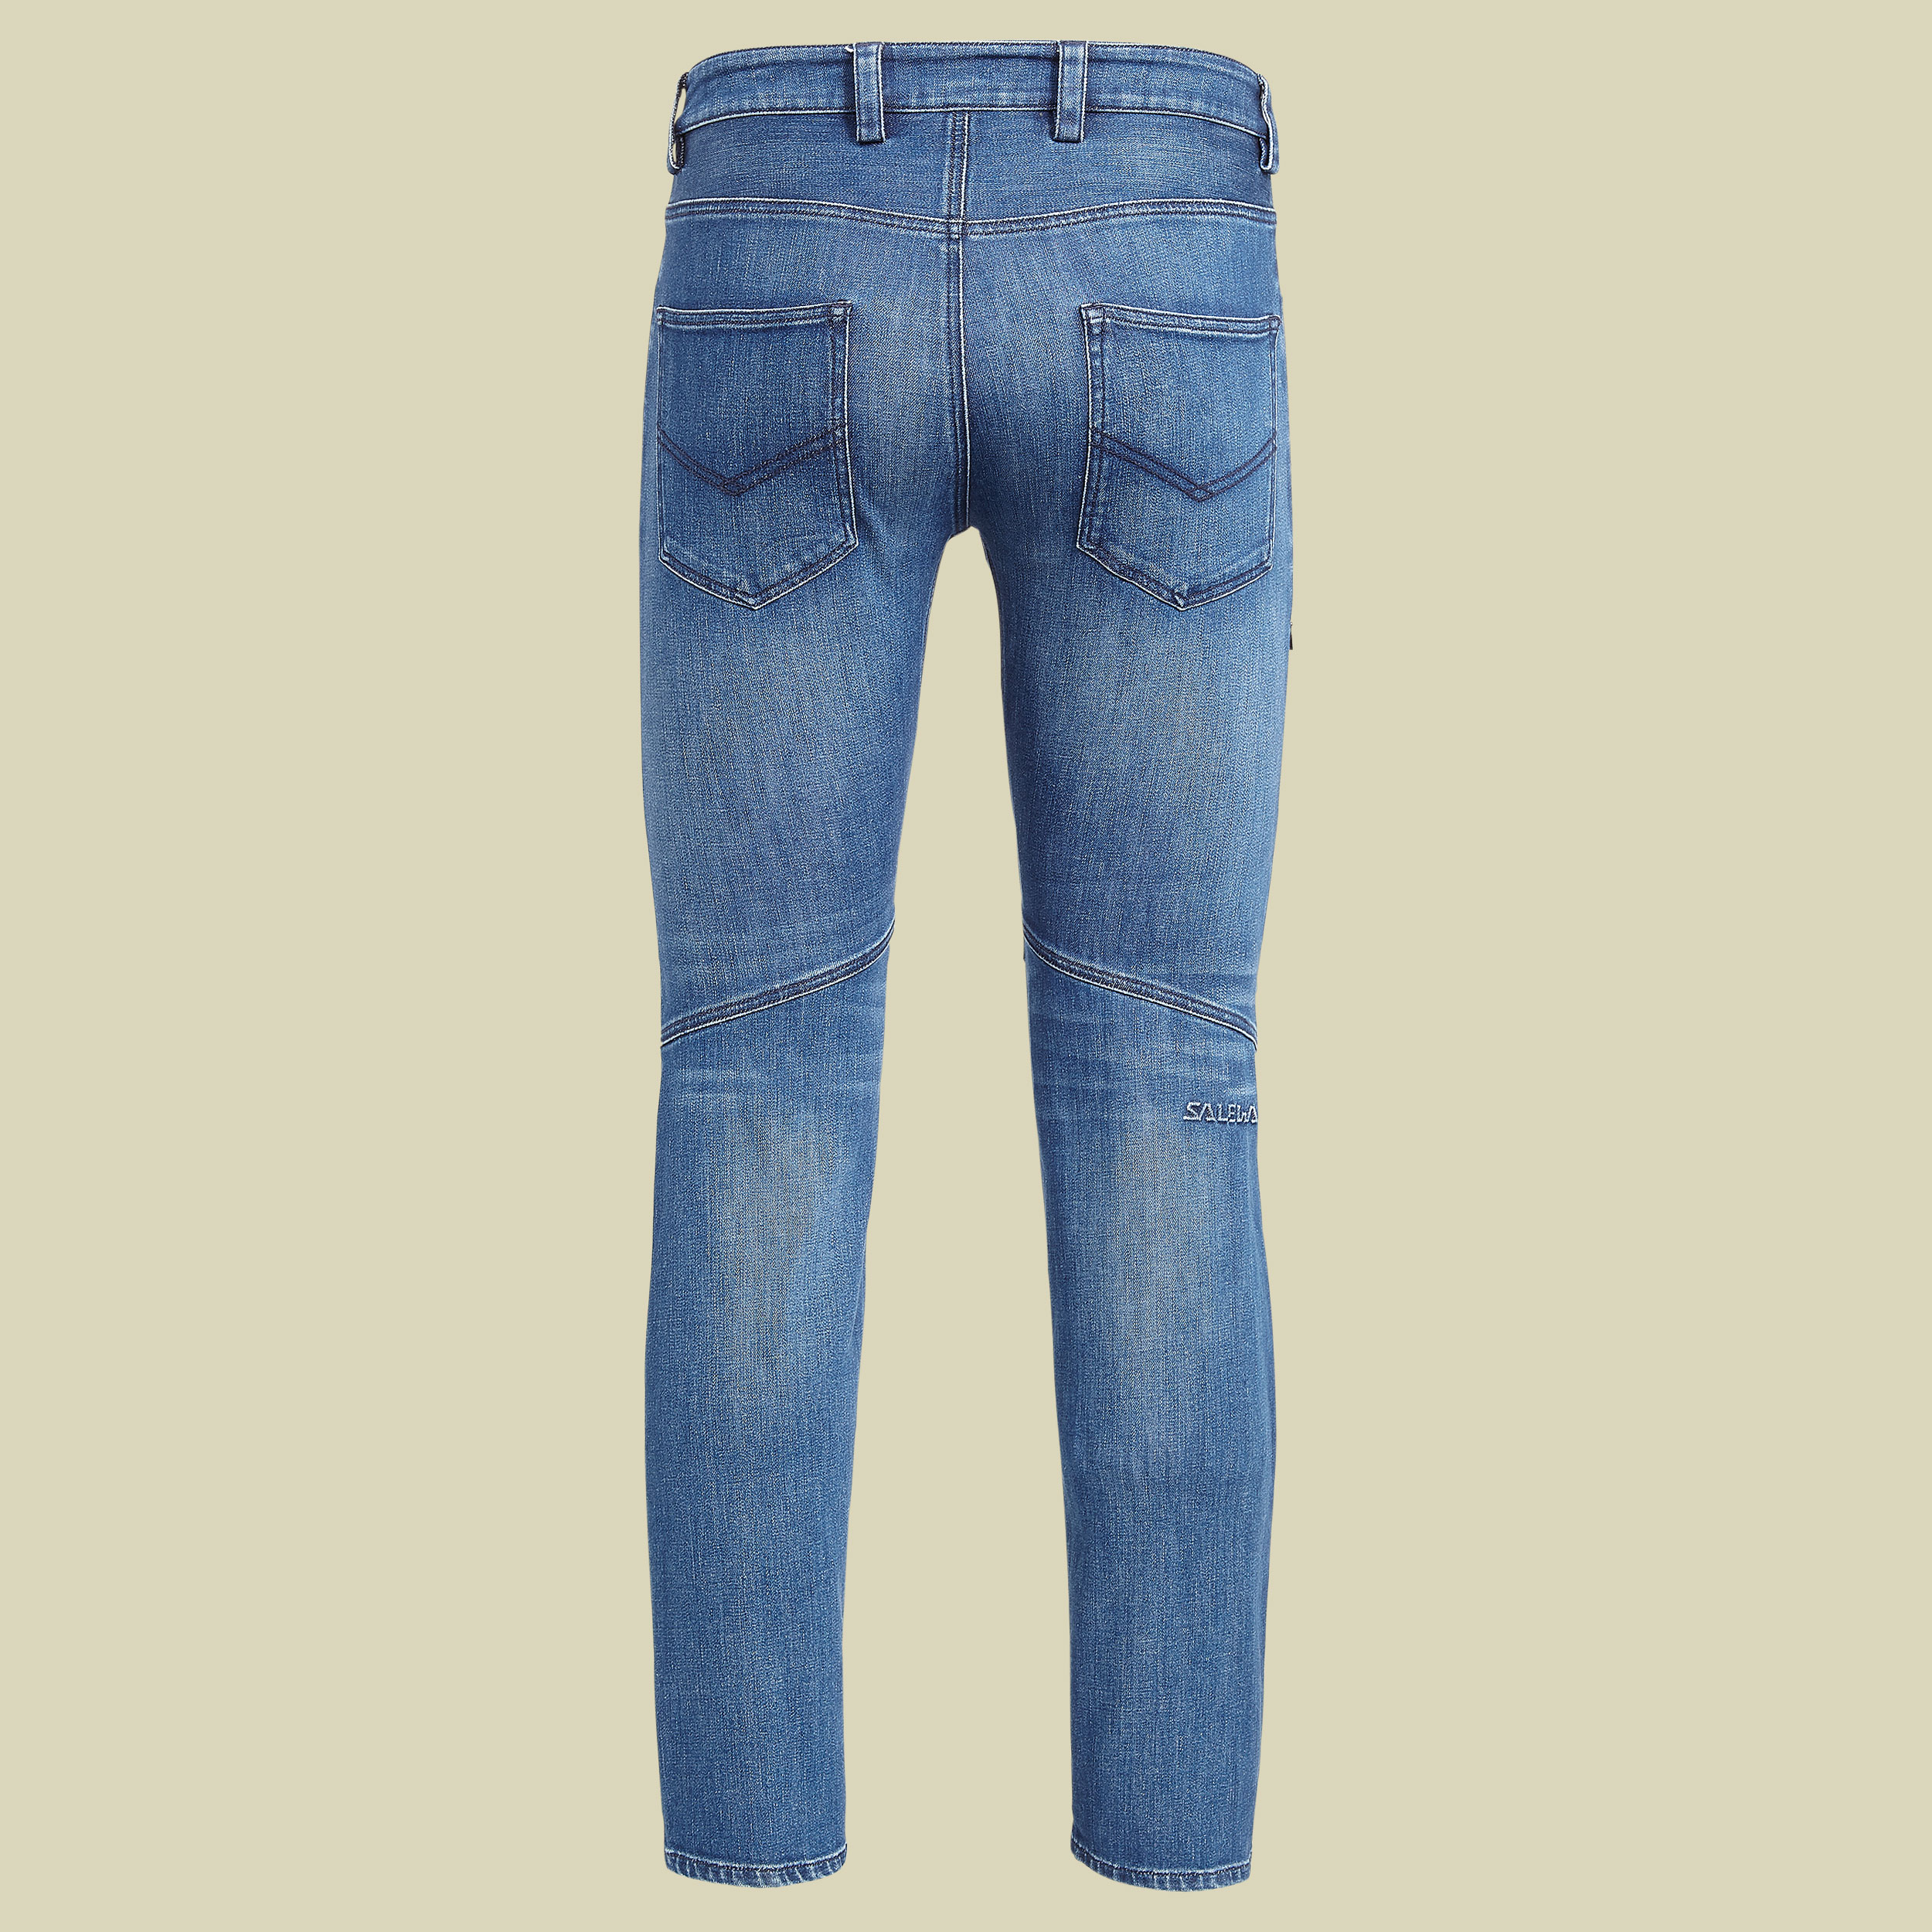 Agner Denim CO Pant Men Größe 52 Farbe jeans blue